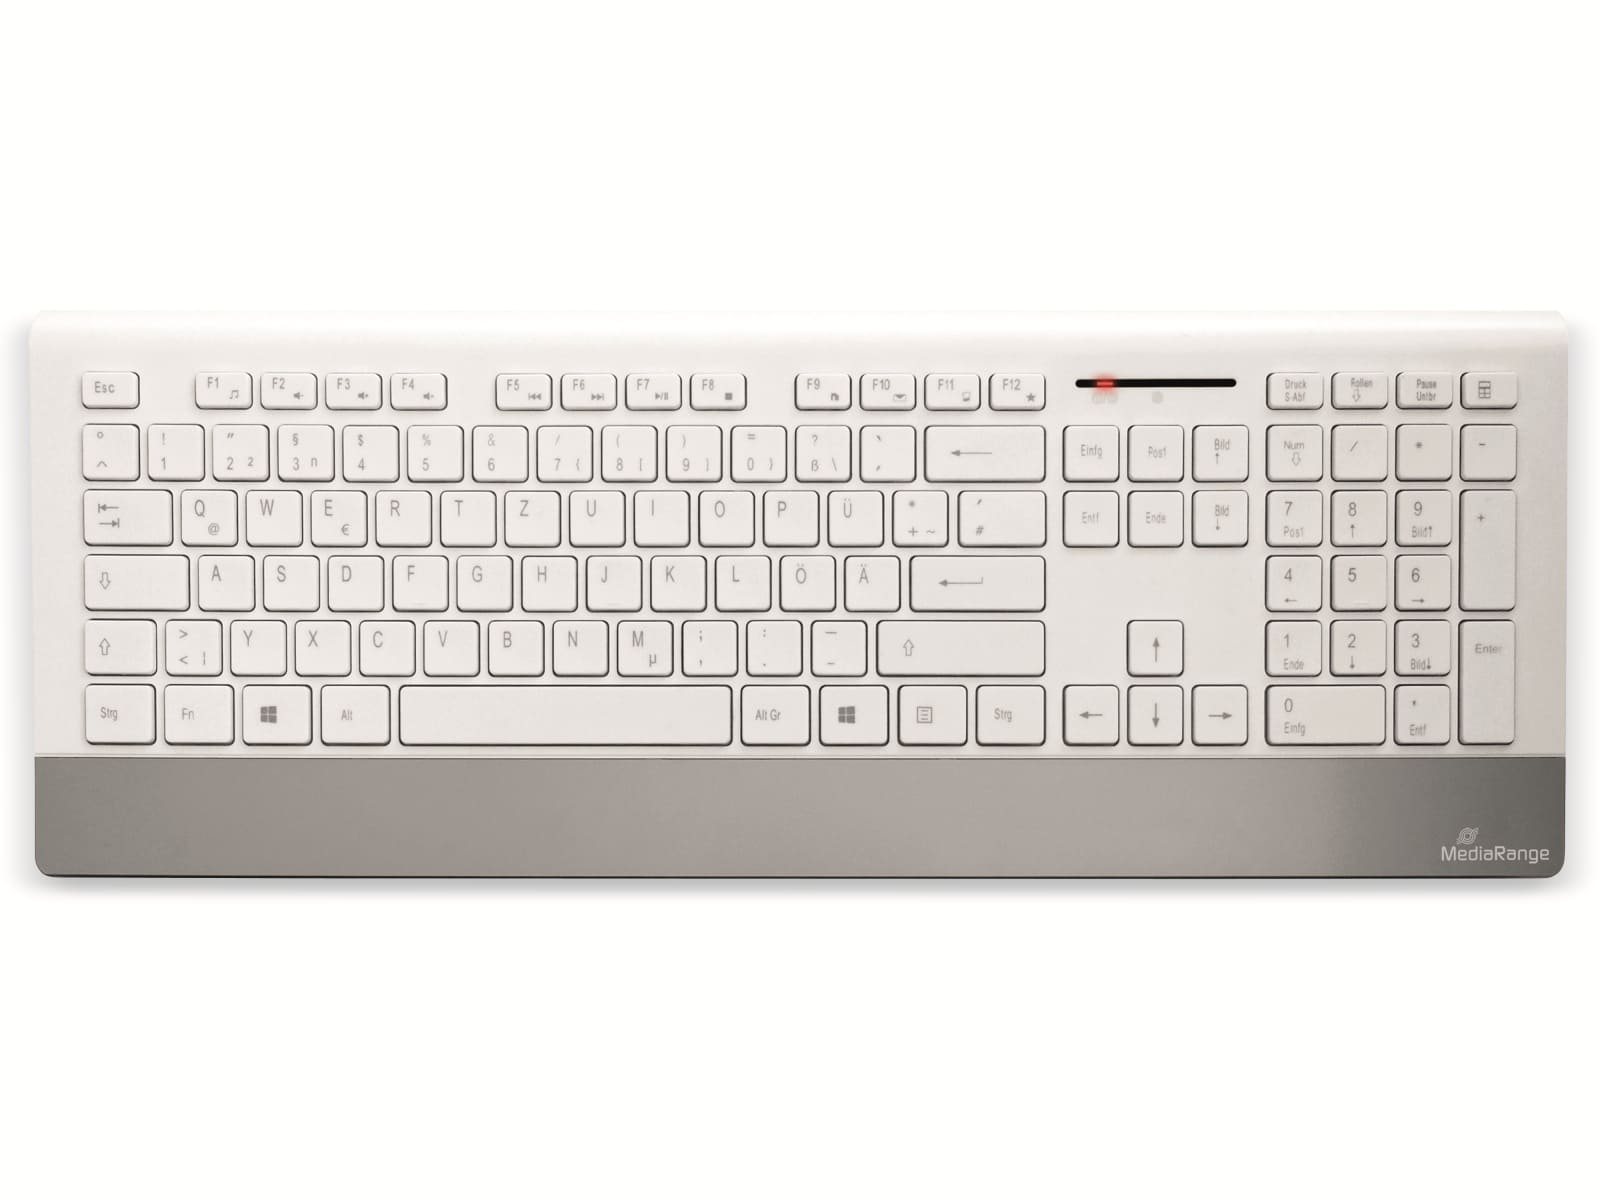 MEDIARANGE Funk-Tastatur- und Maus-Set MROS106, QWERTZ, weiß/silber